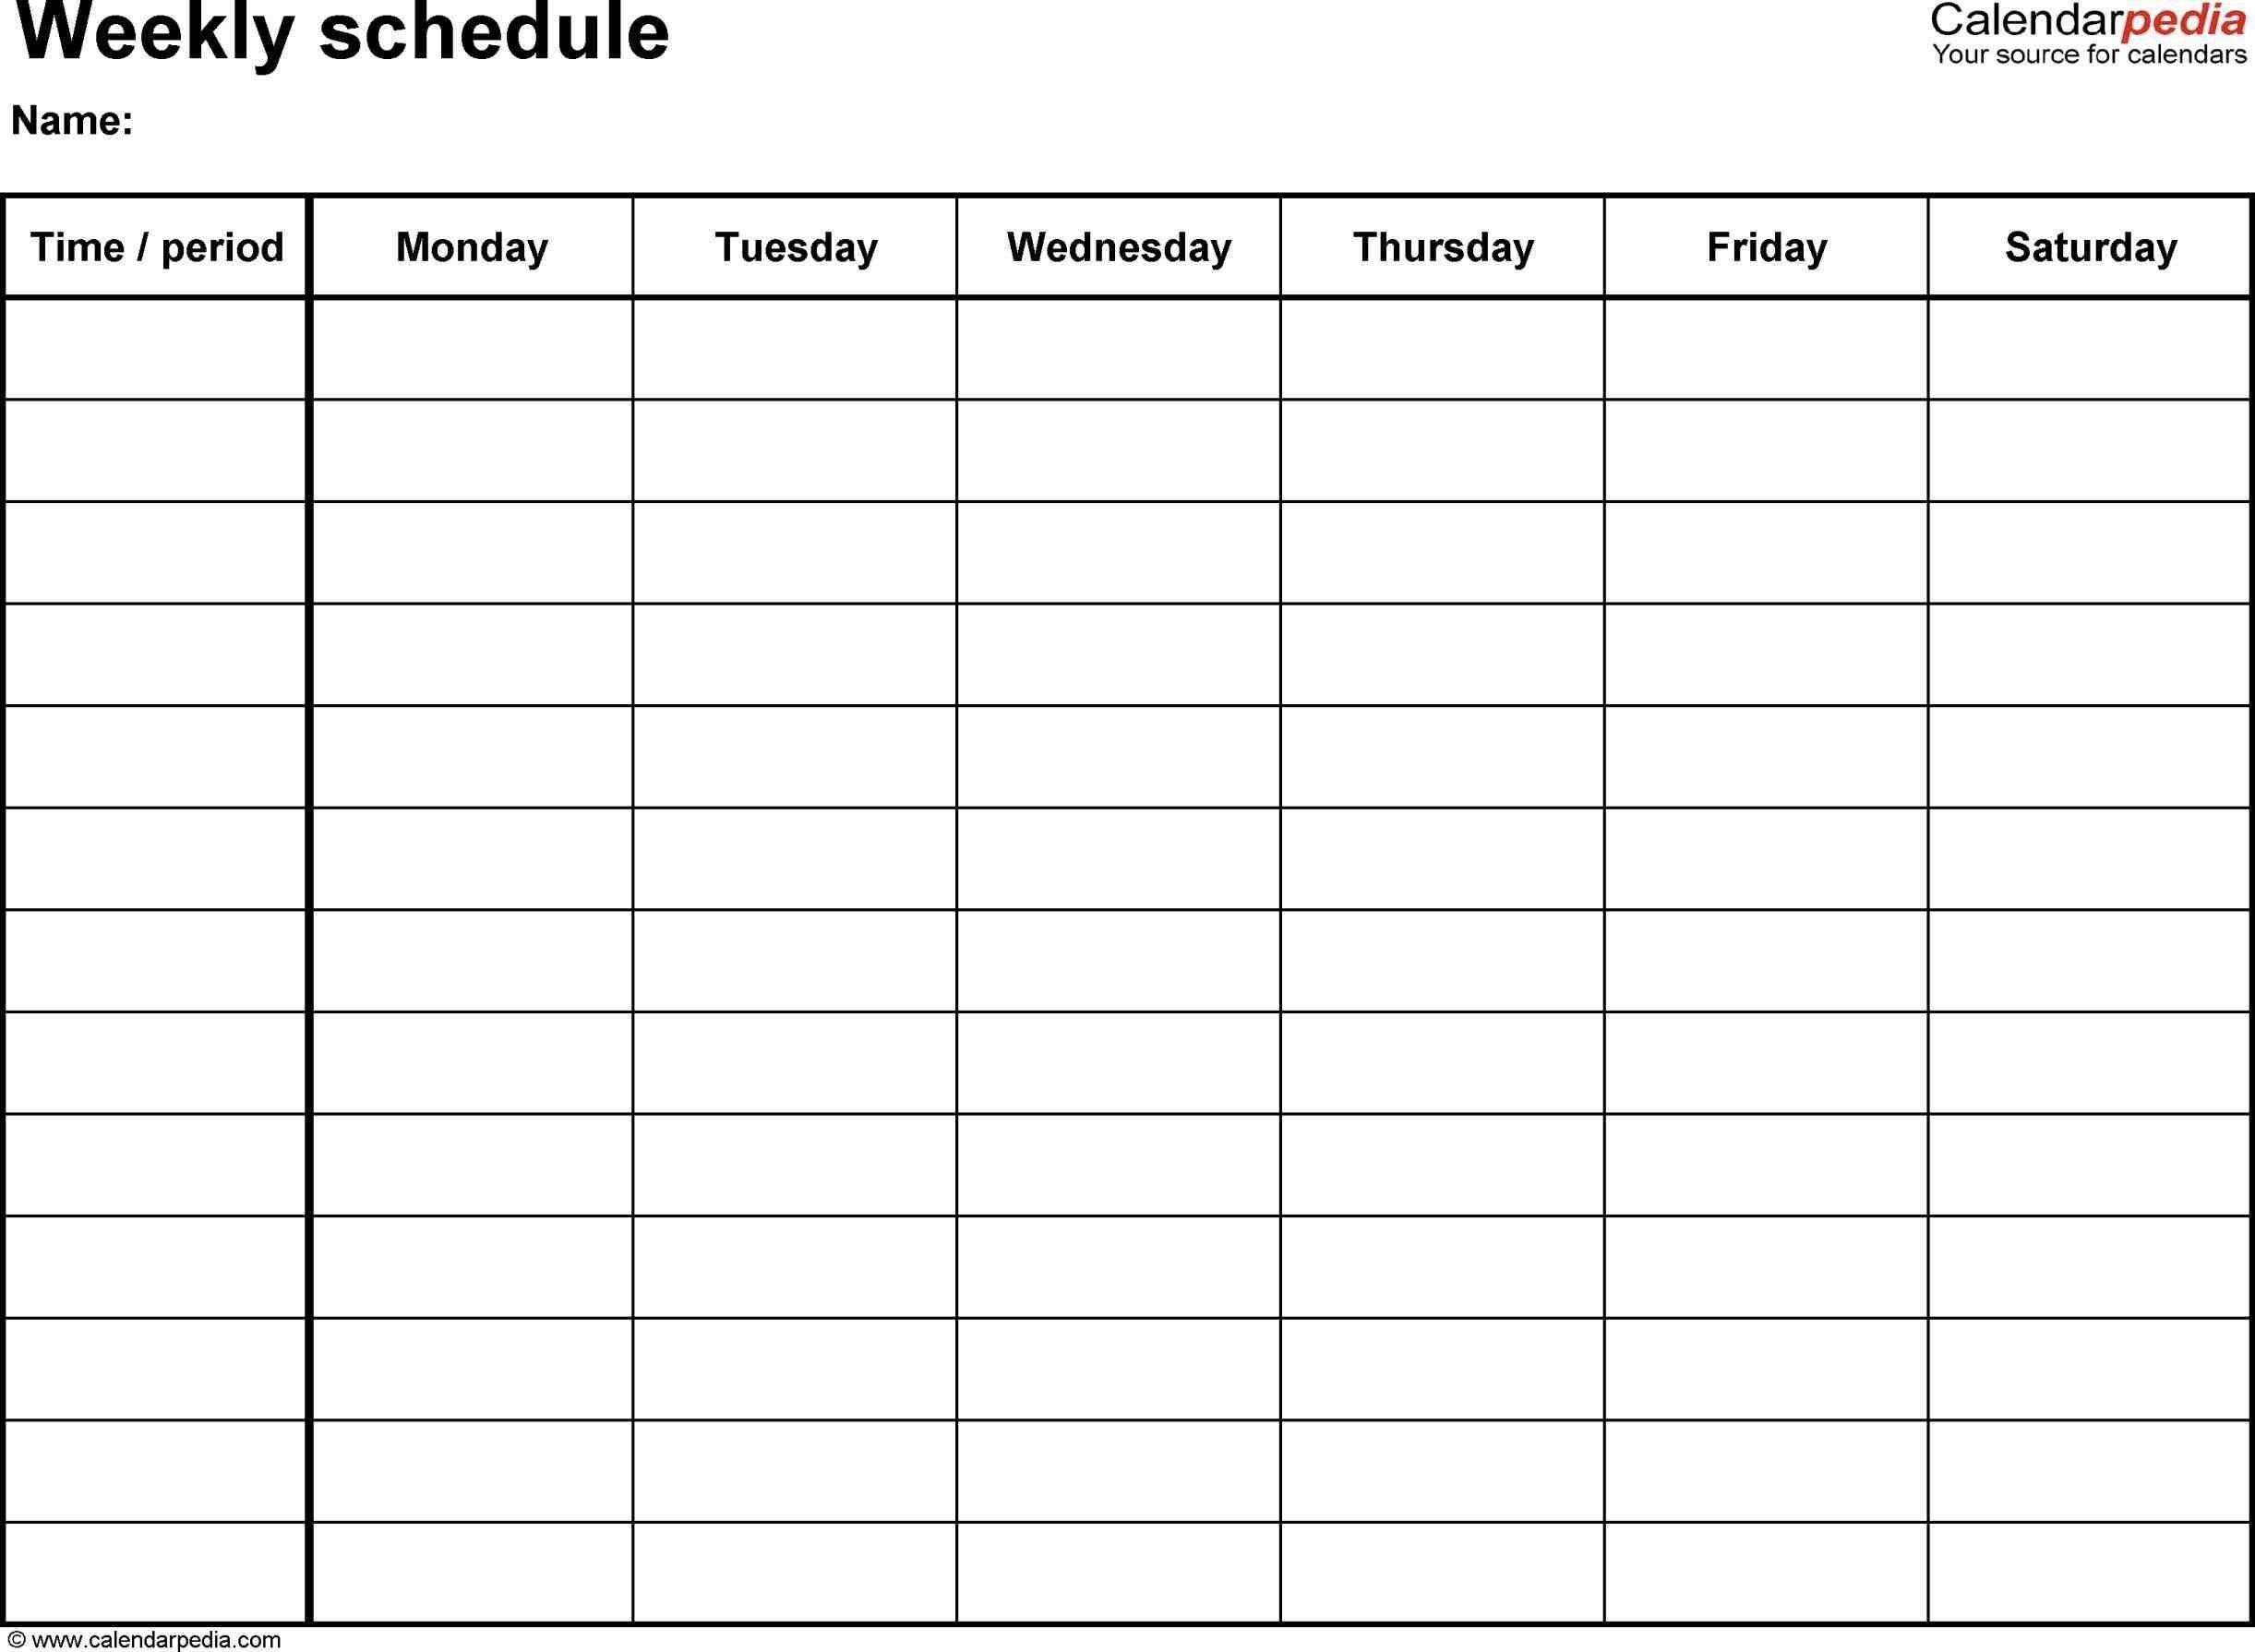 Weekly Calendar Hourly Template In Weekly Hourly Calendar